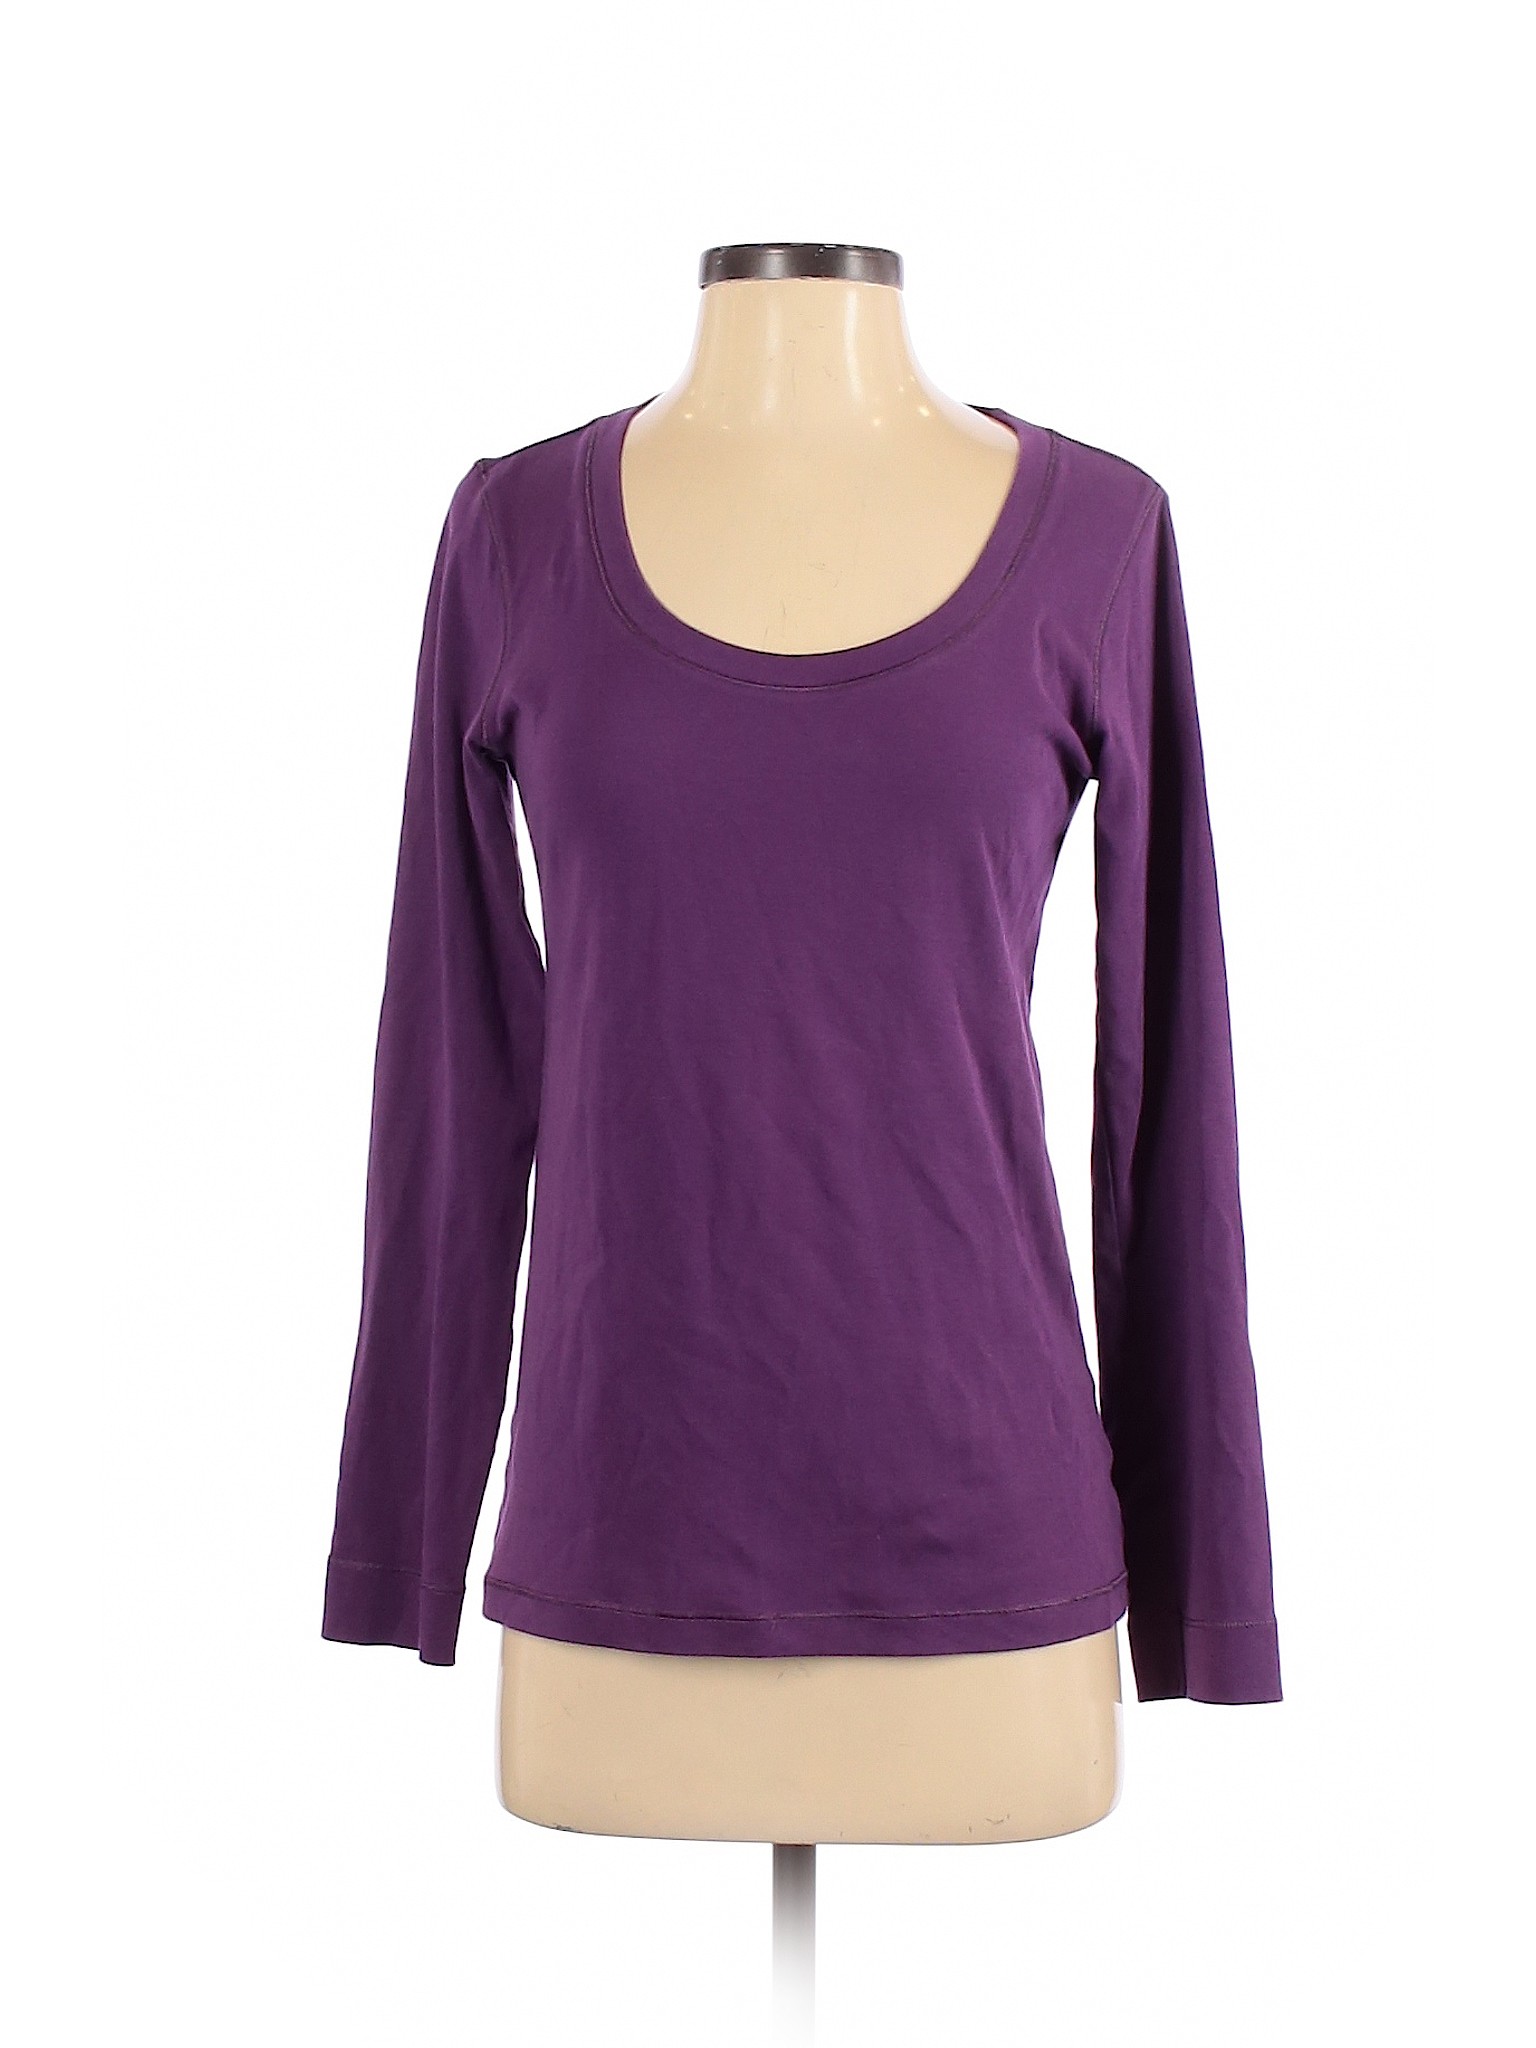 Uniqlo Women Purple Long Sleeve T-Shirt S | eBay